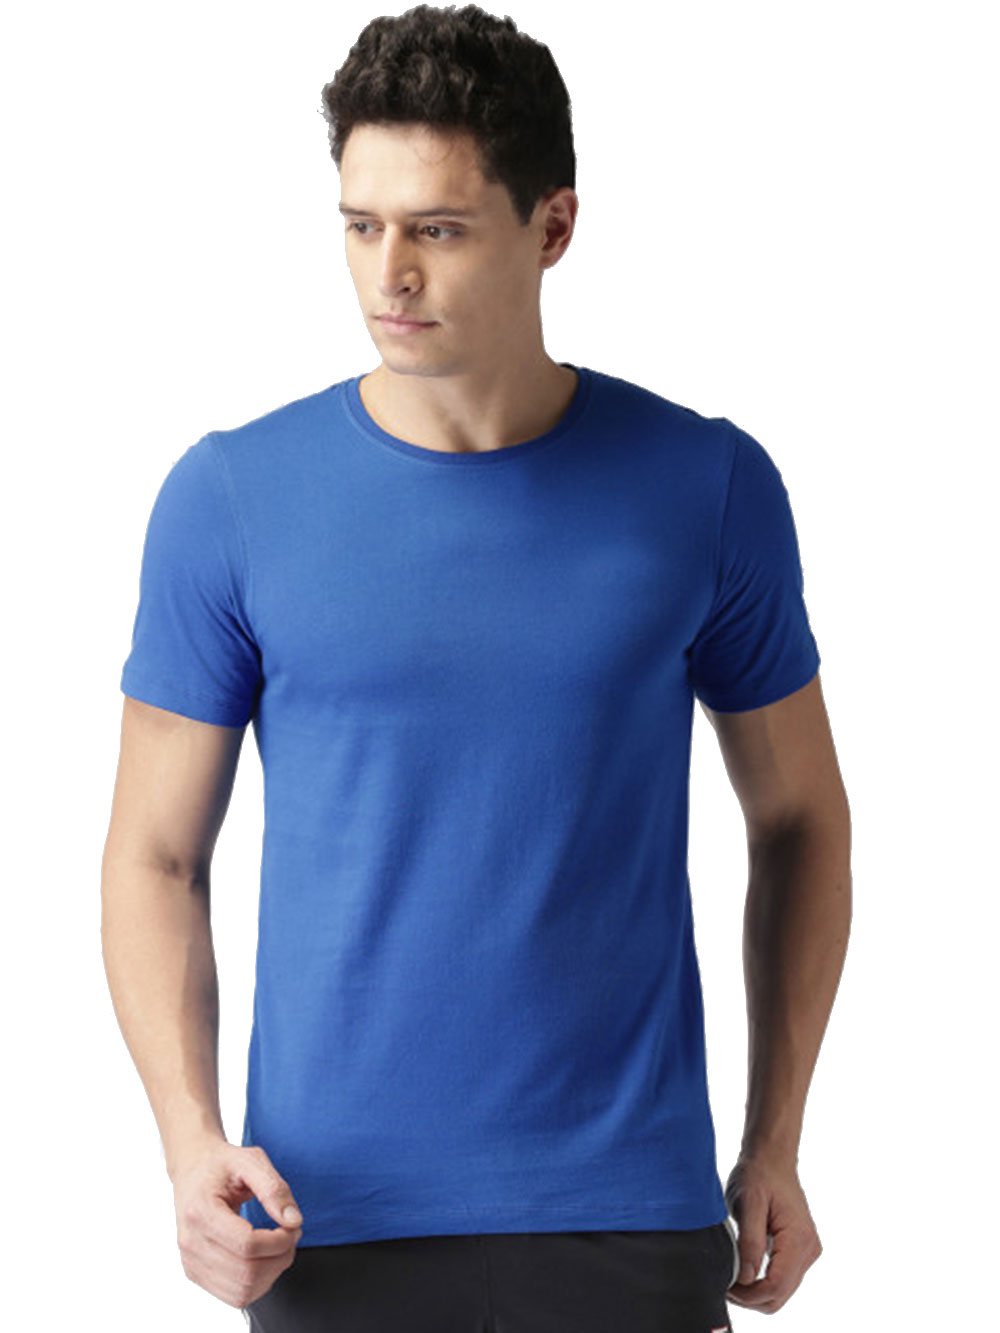 Buy Concepts Men'S Blue Round Neck Dri-Fit T-Shirt Online - Get 52% Off